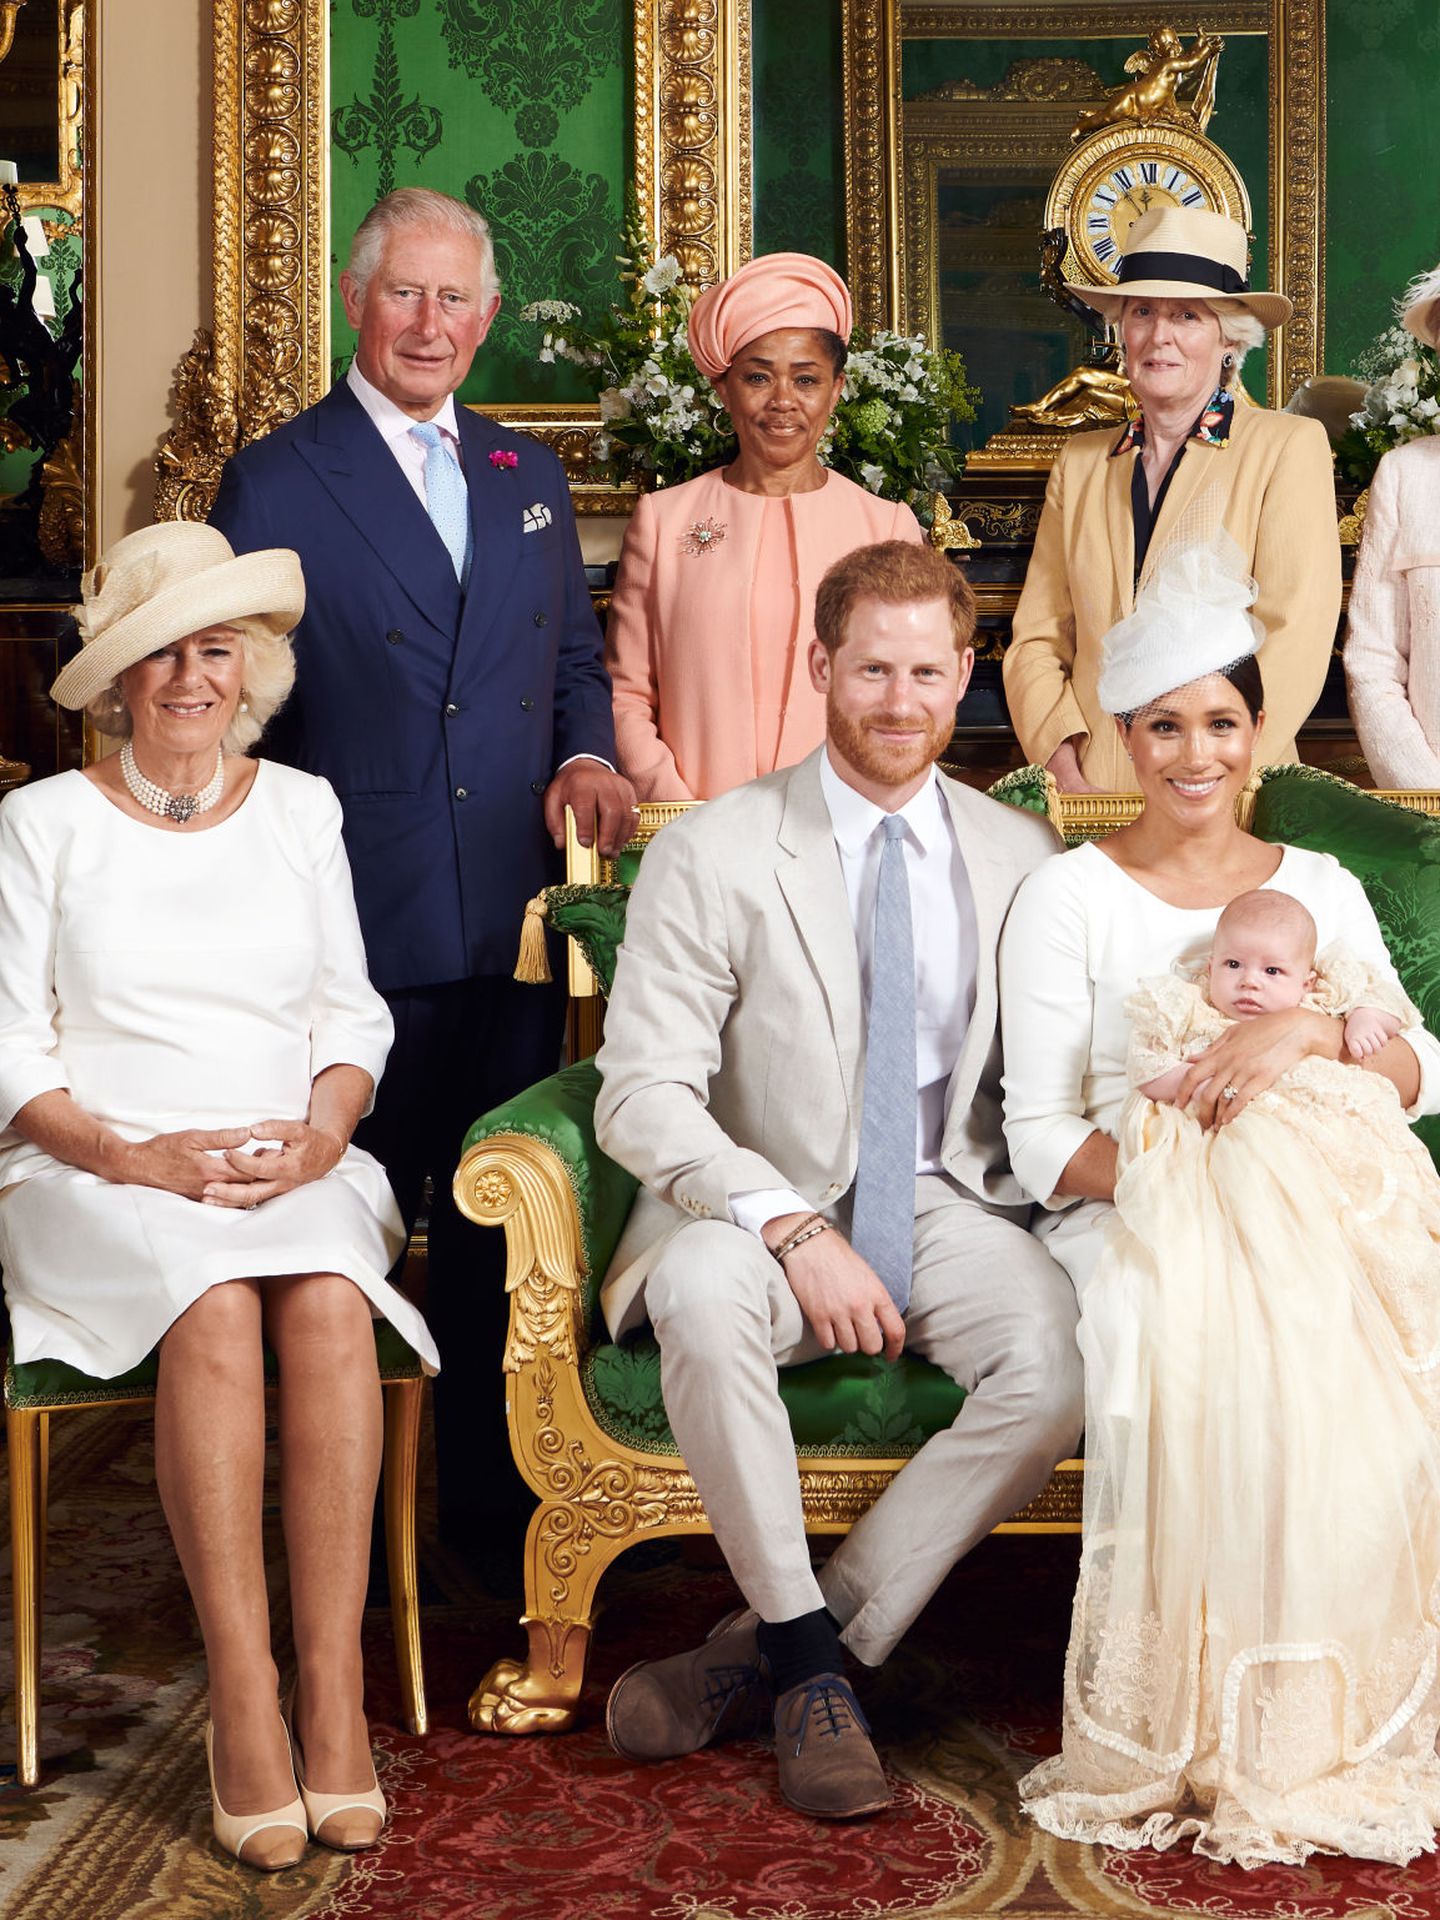 Retrato oficial de la Casa Real británica tras el nacimiento de Archie, el primer hijo de Meghan Markle y el príncipe Harry. (EFE)